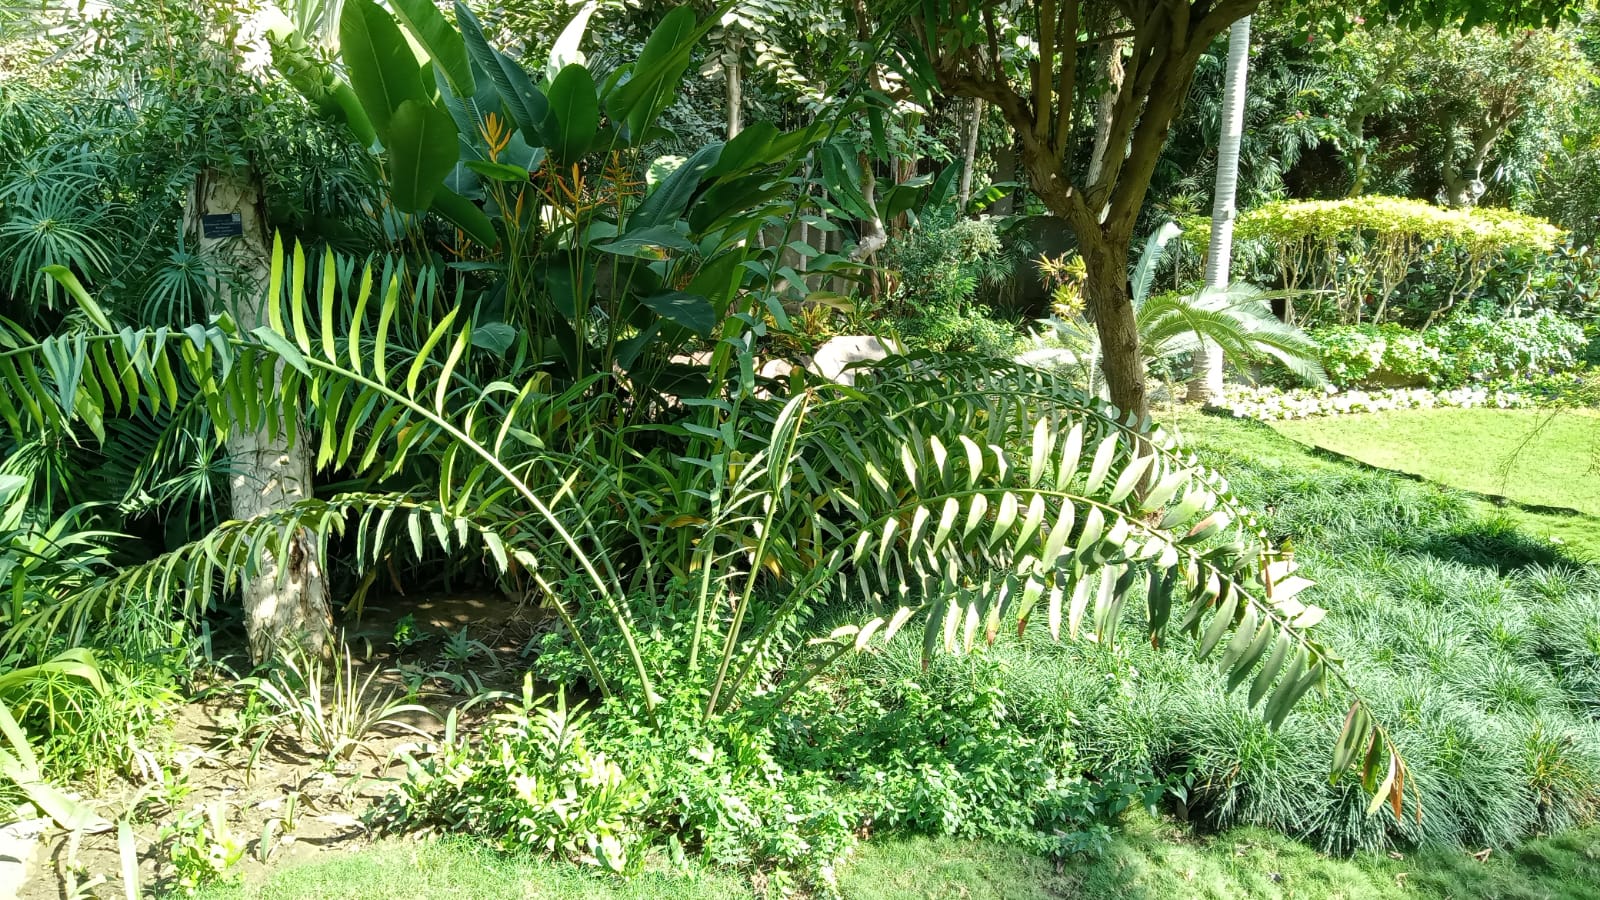 Encephalartos laurentianus